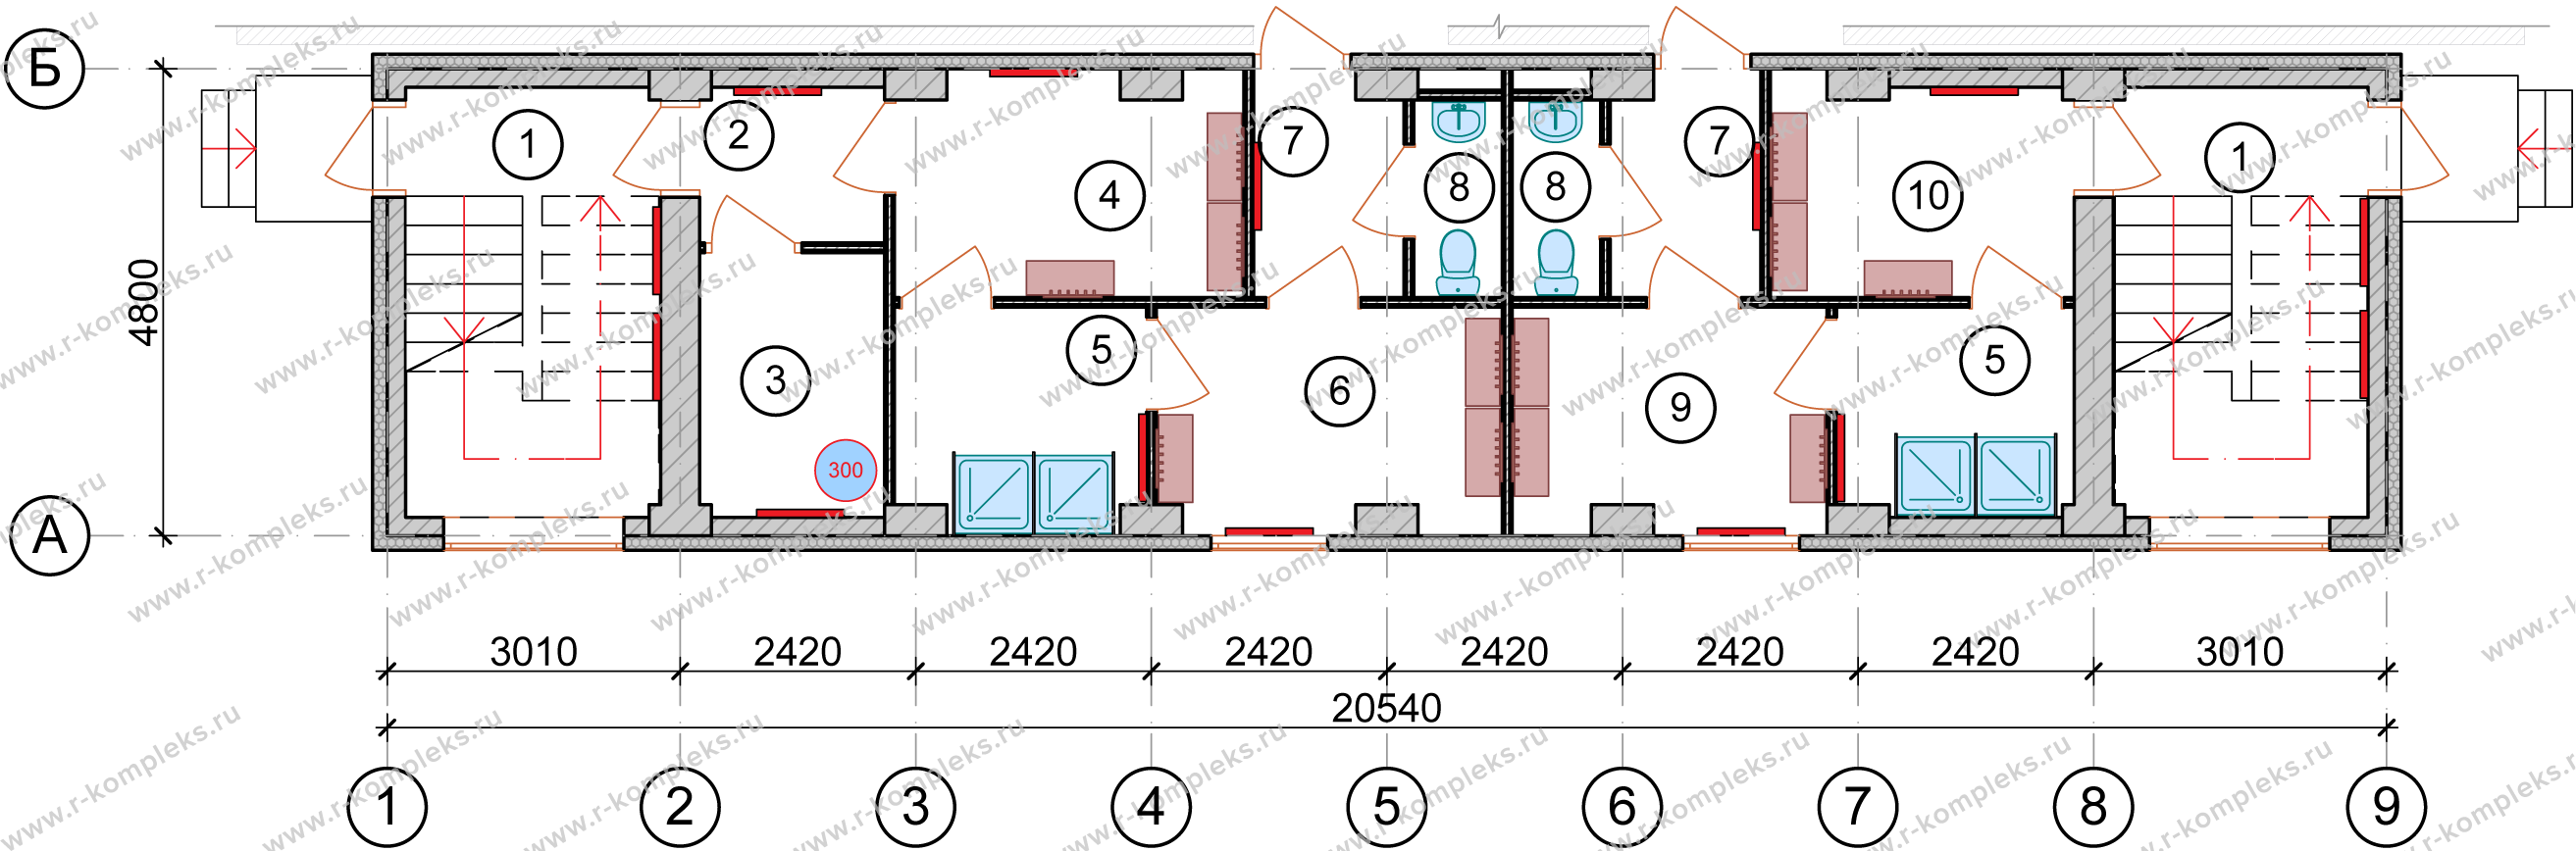 Модульное здание АБК 197.18 м²: проектирование, изготовление, цены (проект  #МЗ_СПК_АБК-28_0124)